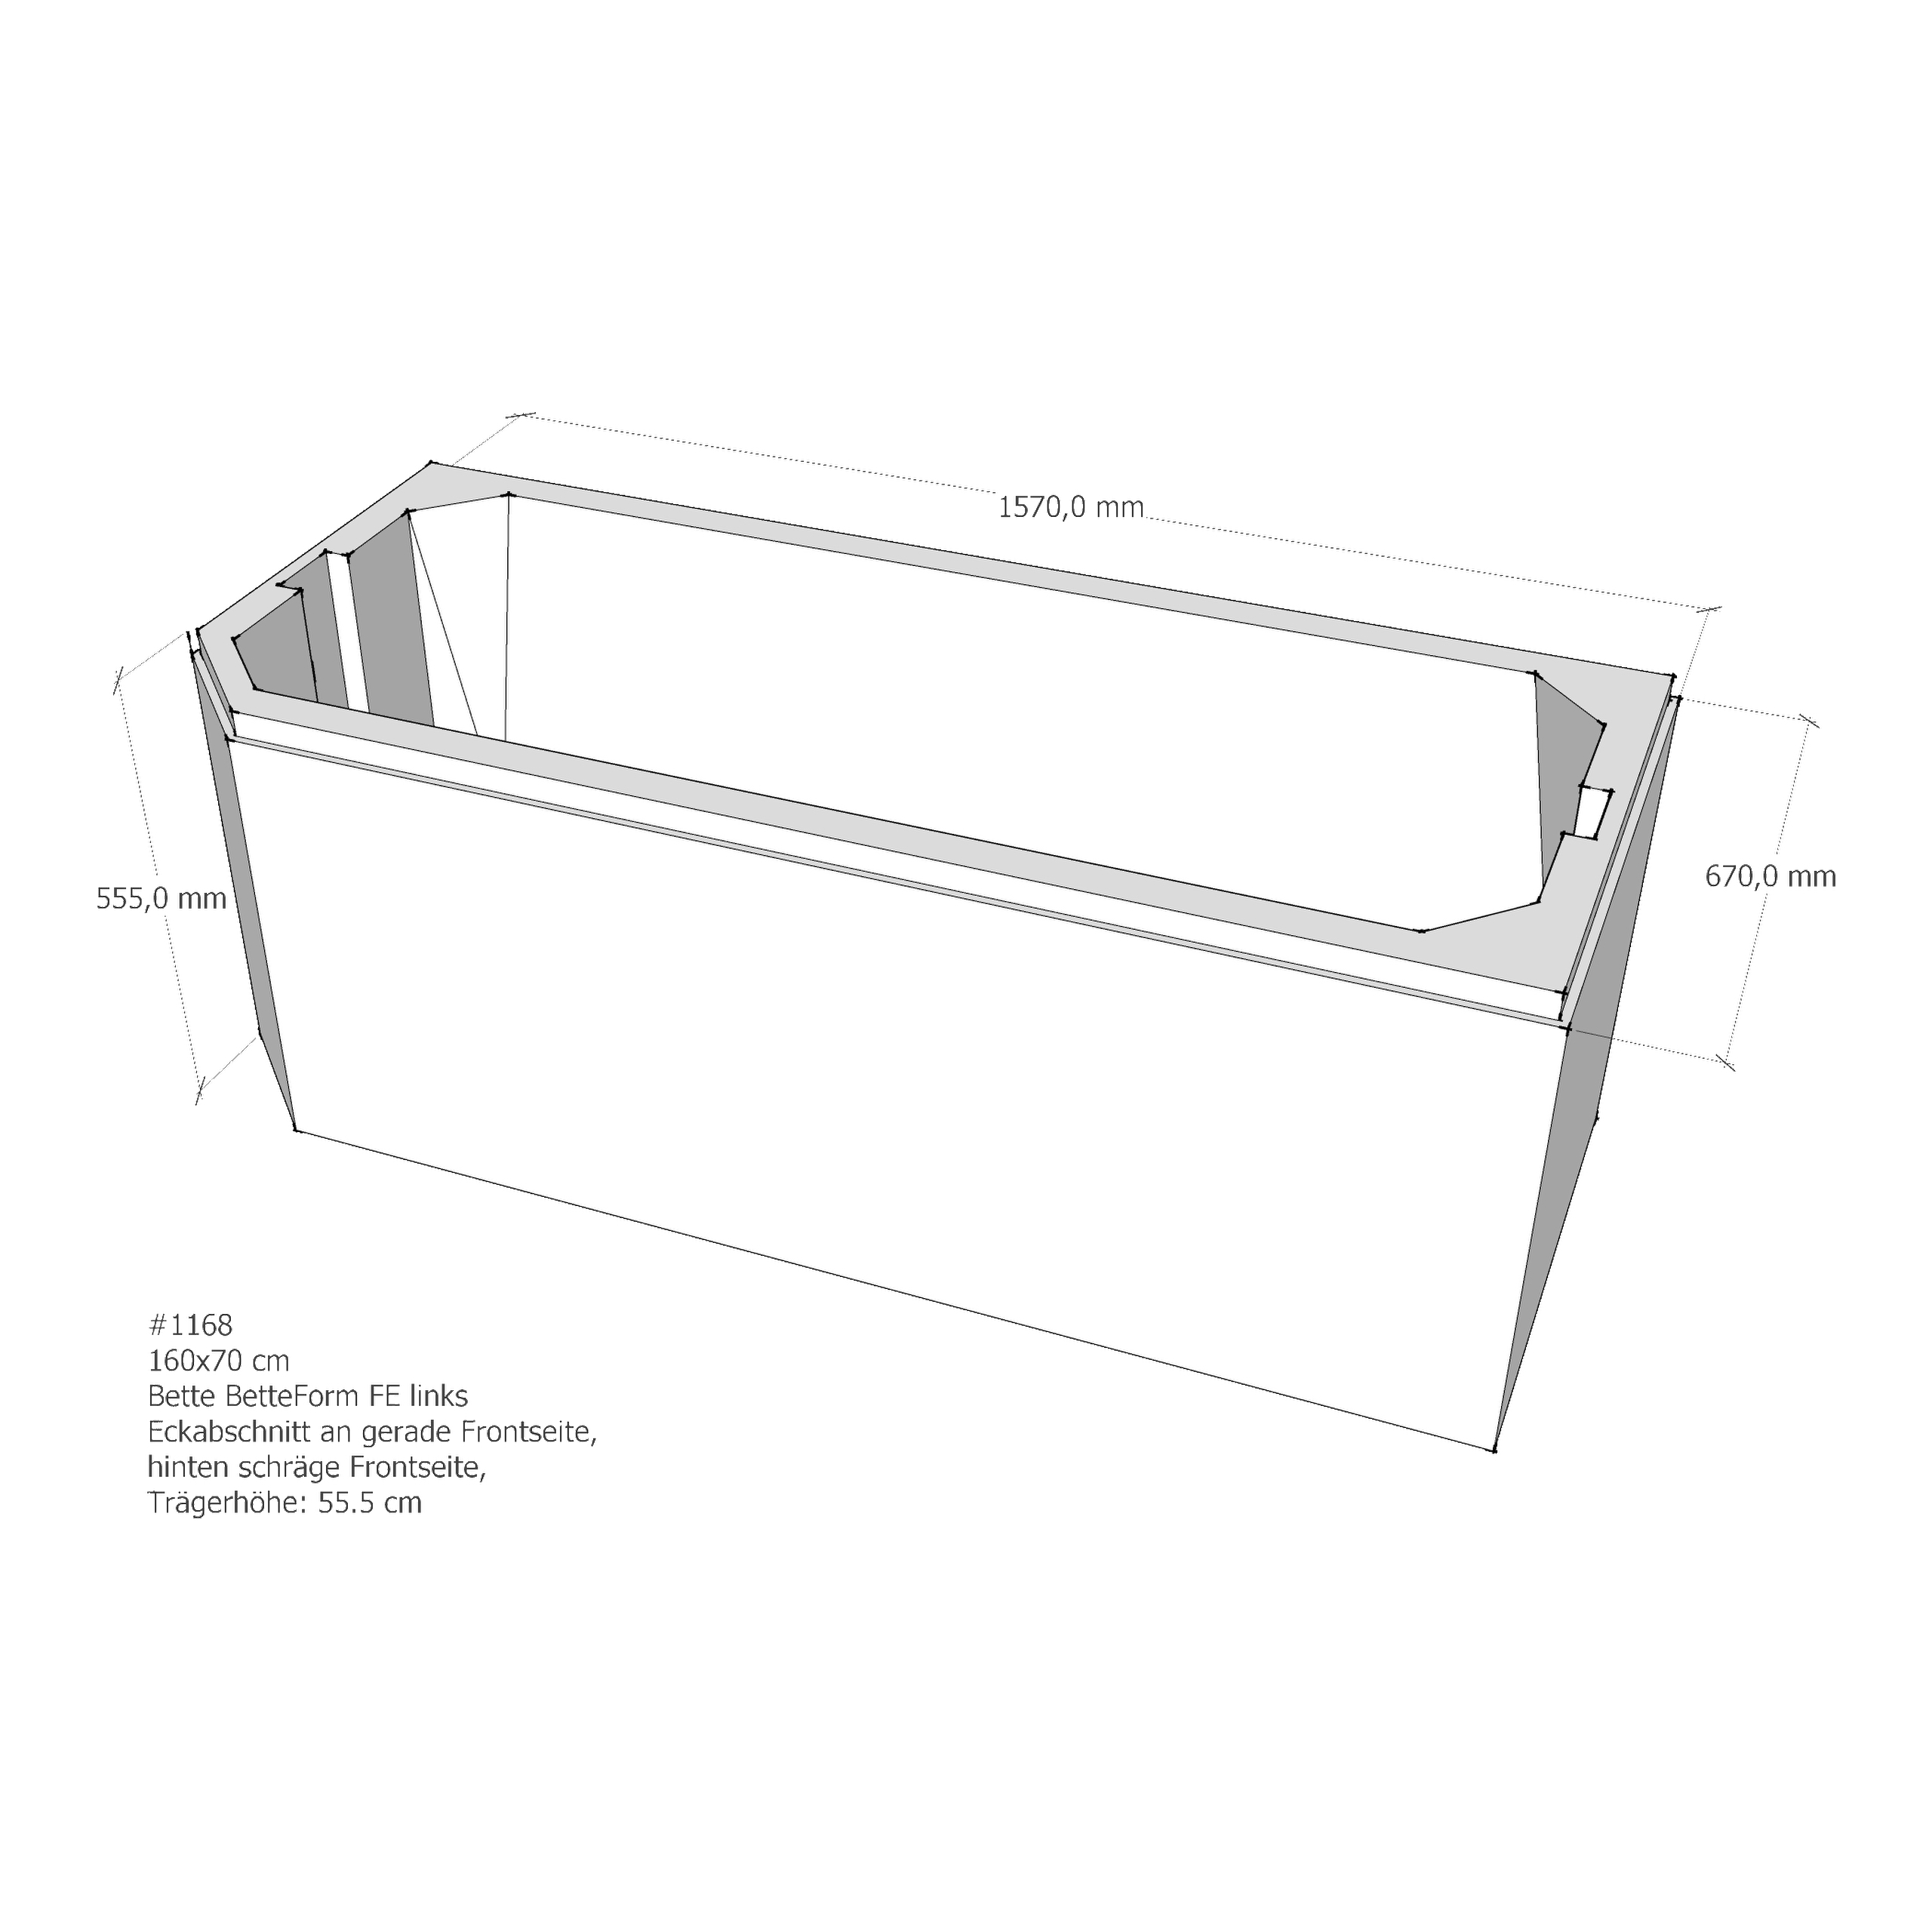 Badewannenträger für Bette BetteProfi-Form FE links 160 × 70 × 42 cm